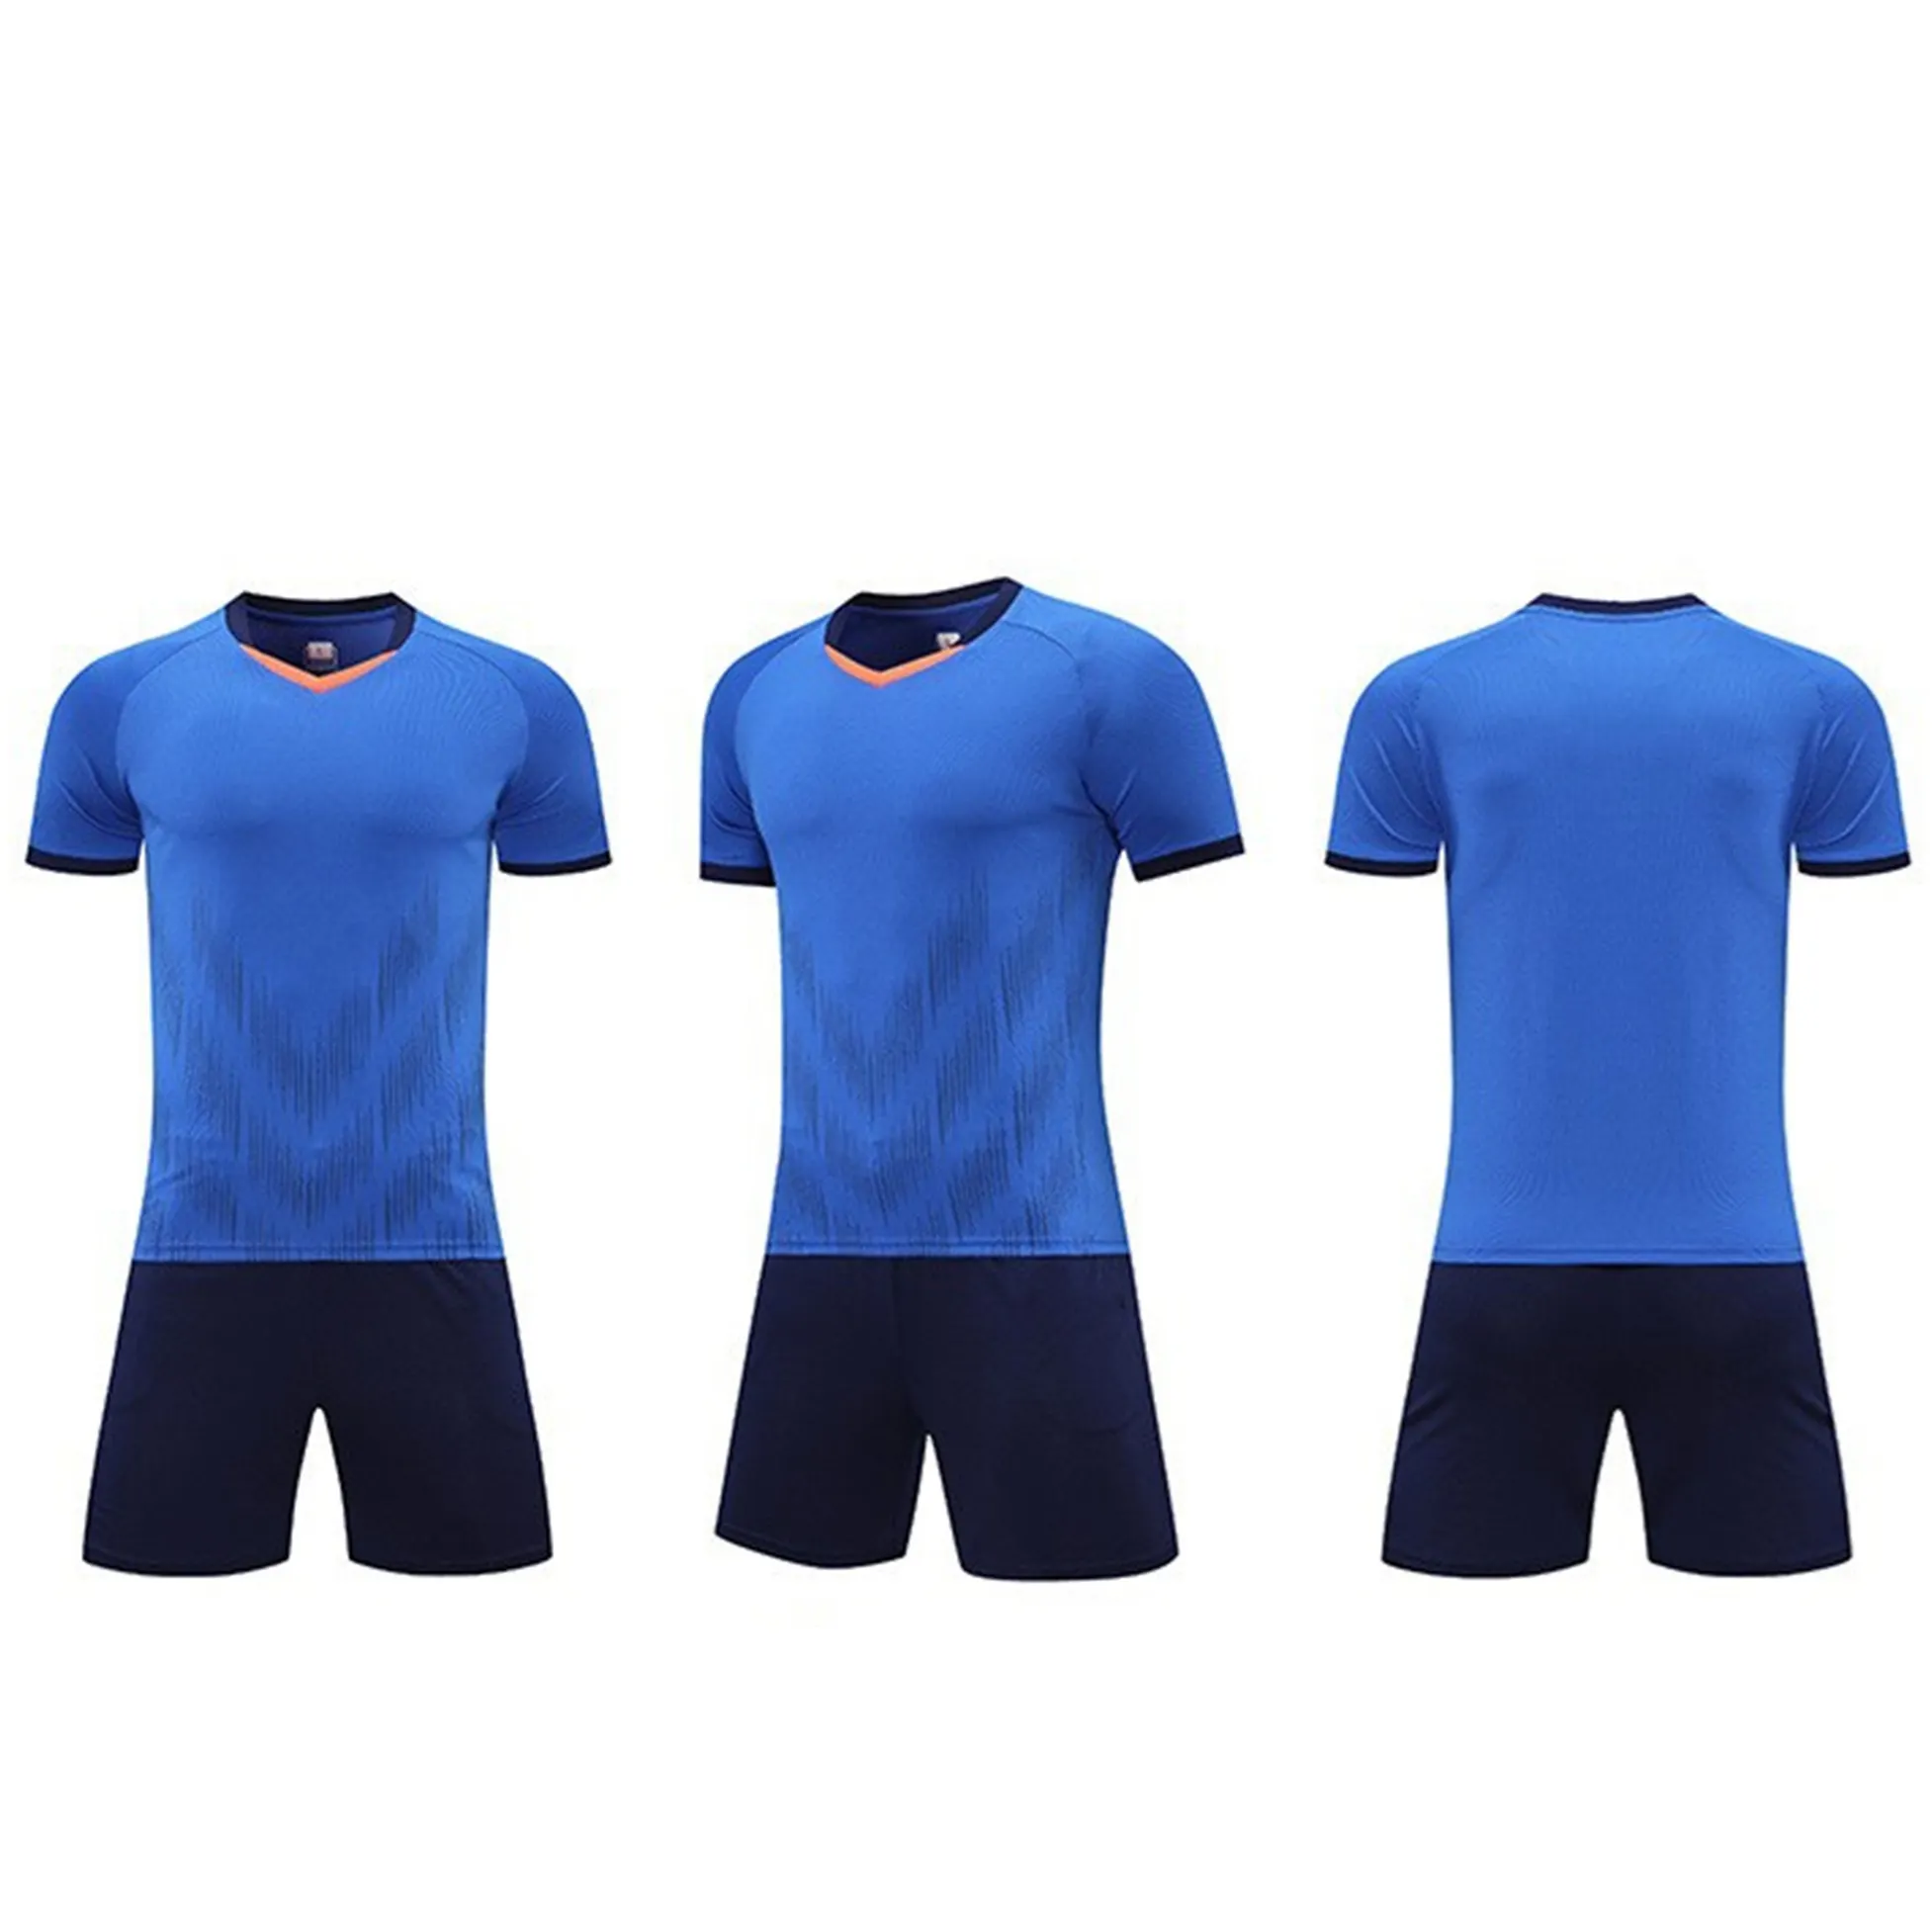 ชุดกีฬาฟุตบอลสำหรับผู้ชาย,เสื้อเจอร์ซีย์ระบายอากาศได้ดีแบบกำหนดเองสำหรับประเทศไทย